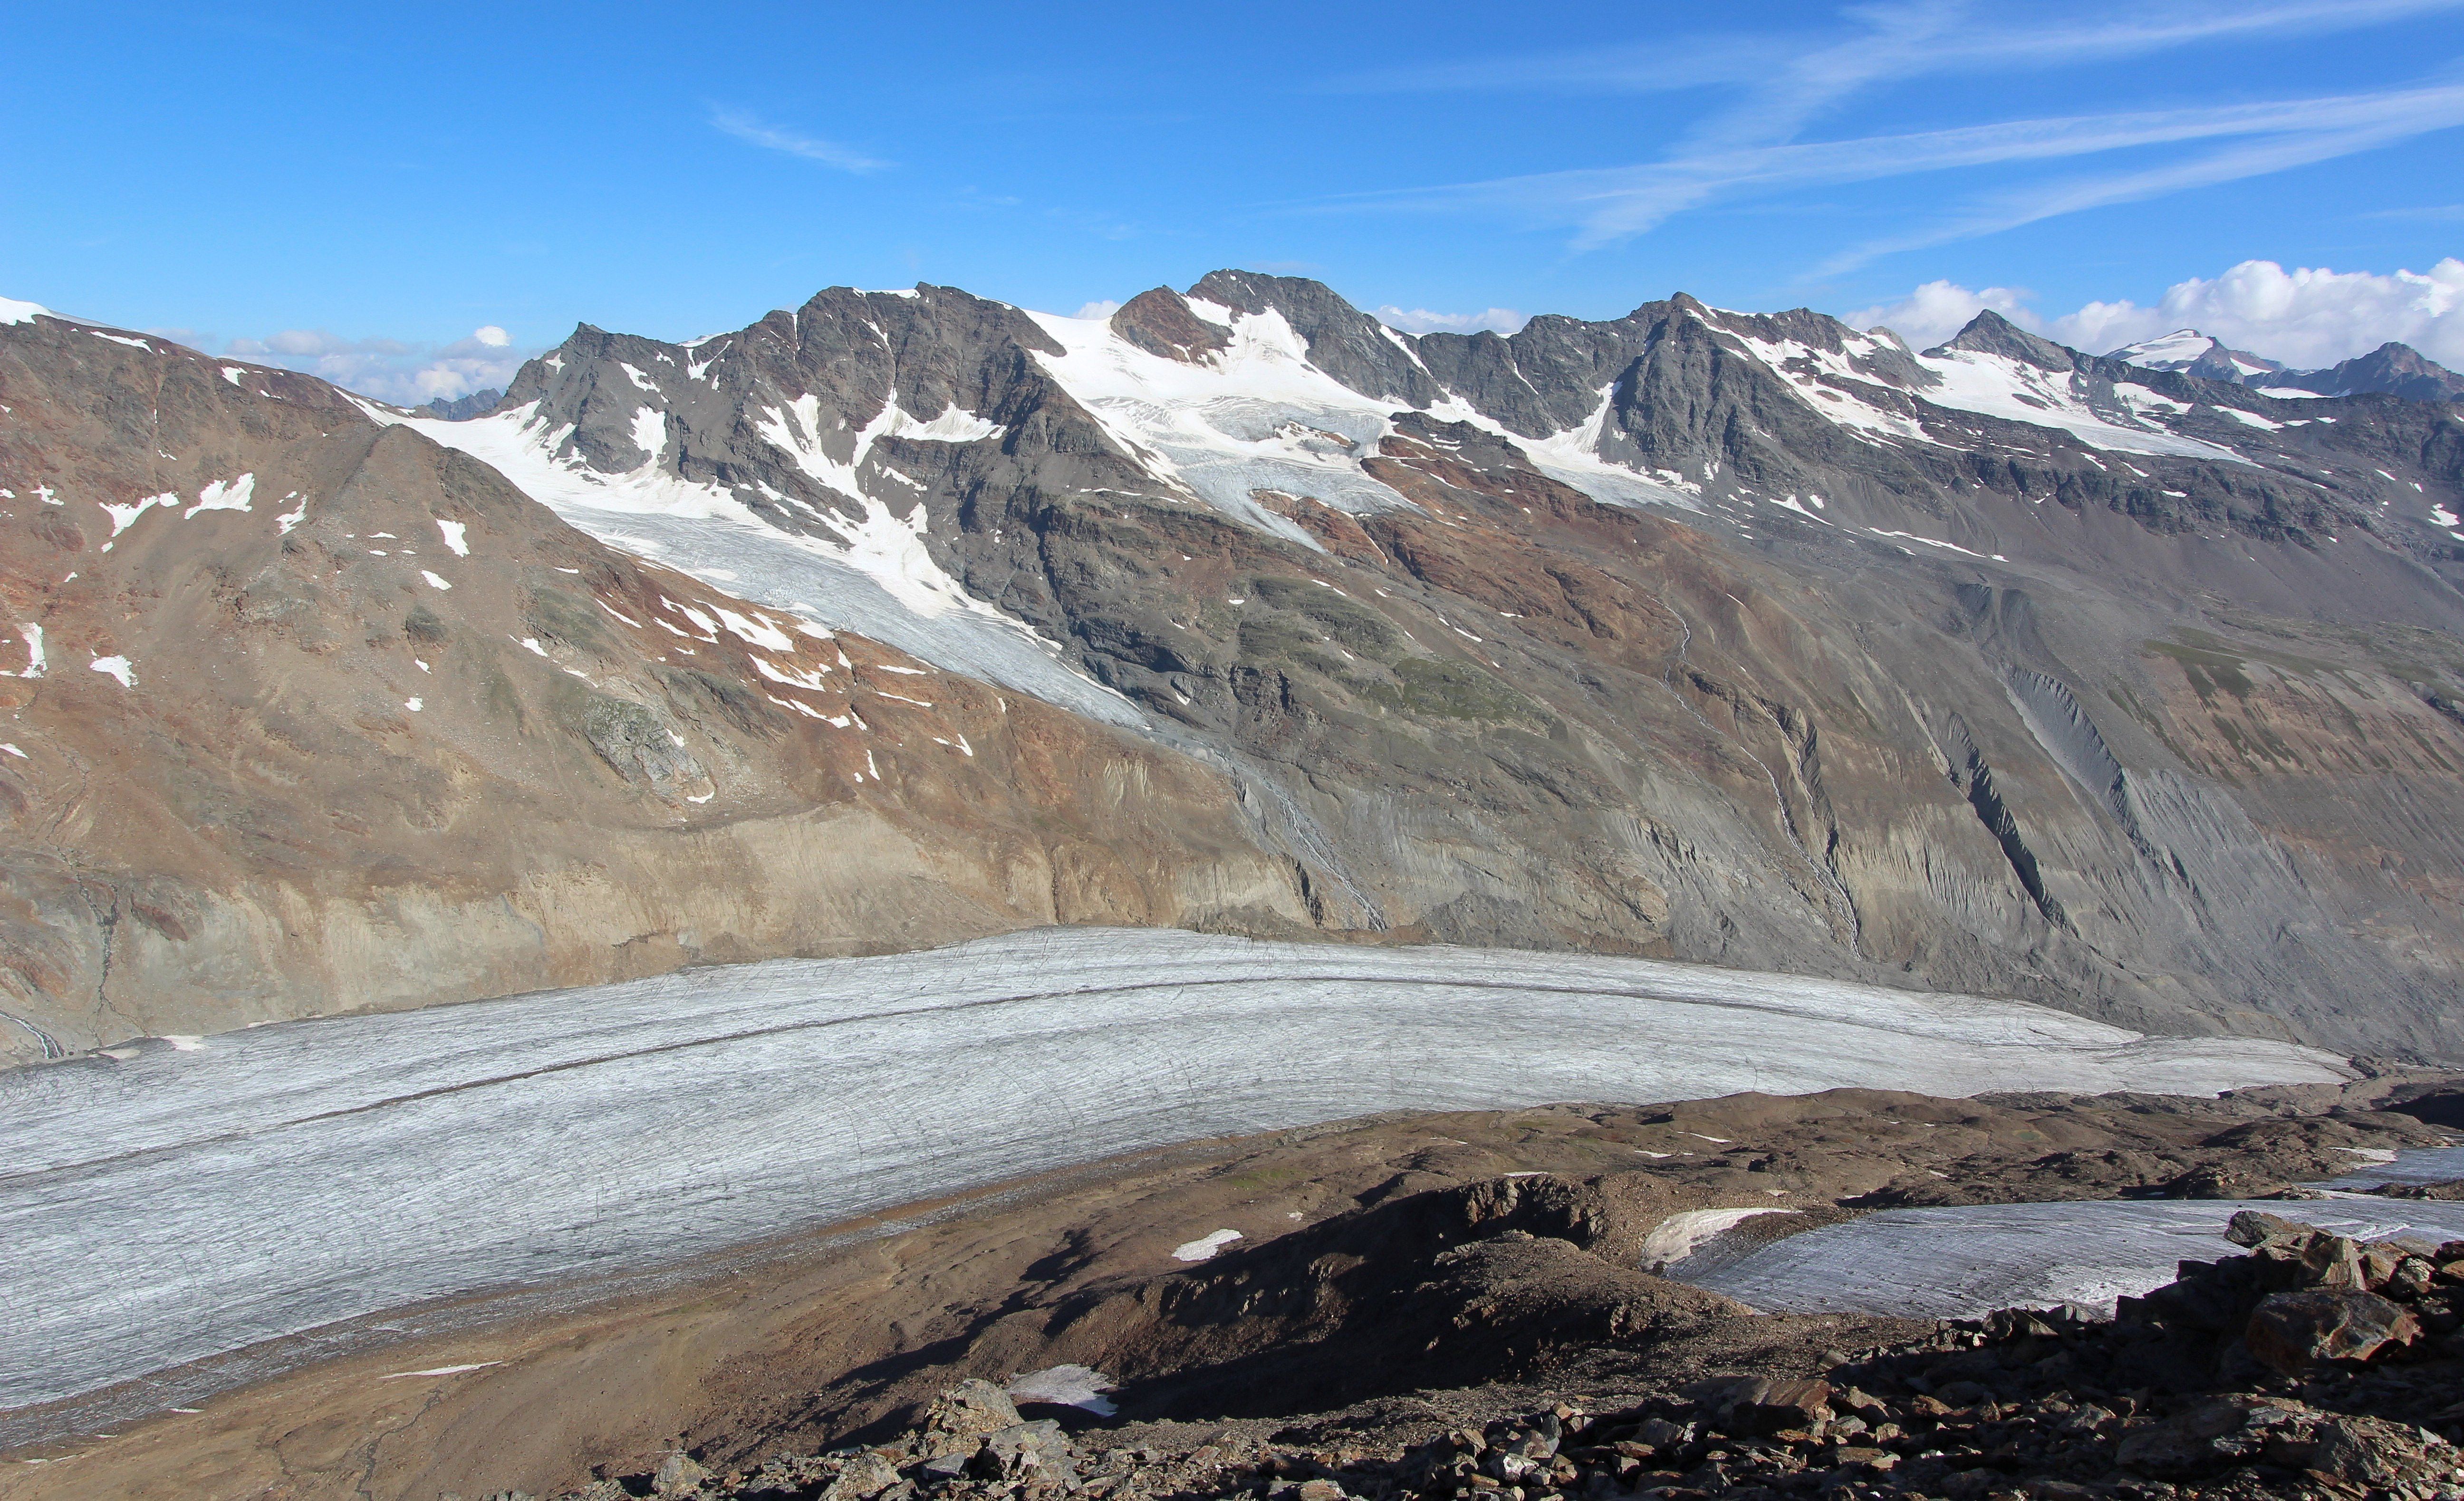 De sneeuwvrije Hintereisferner (Ötztaler Alpen) gaat deze week flink wat ijs verliezen